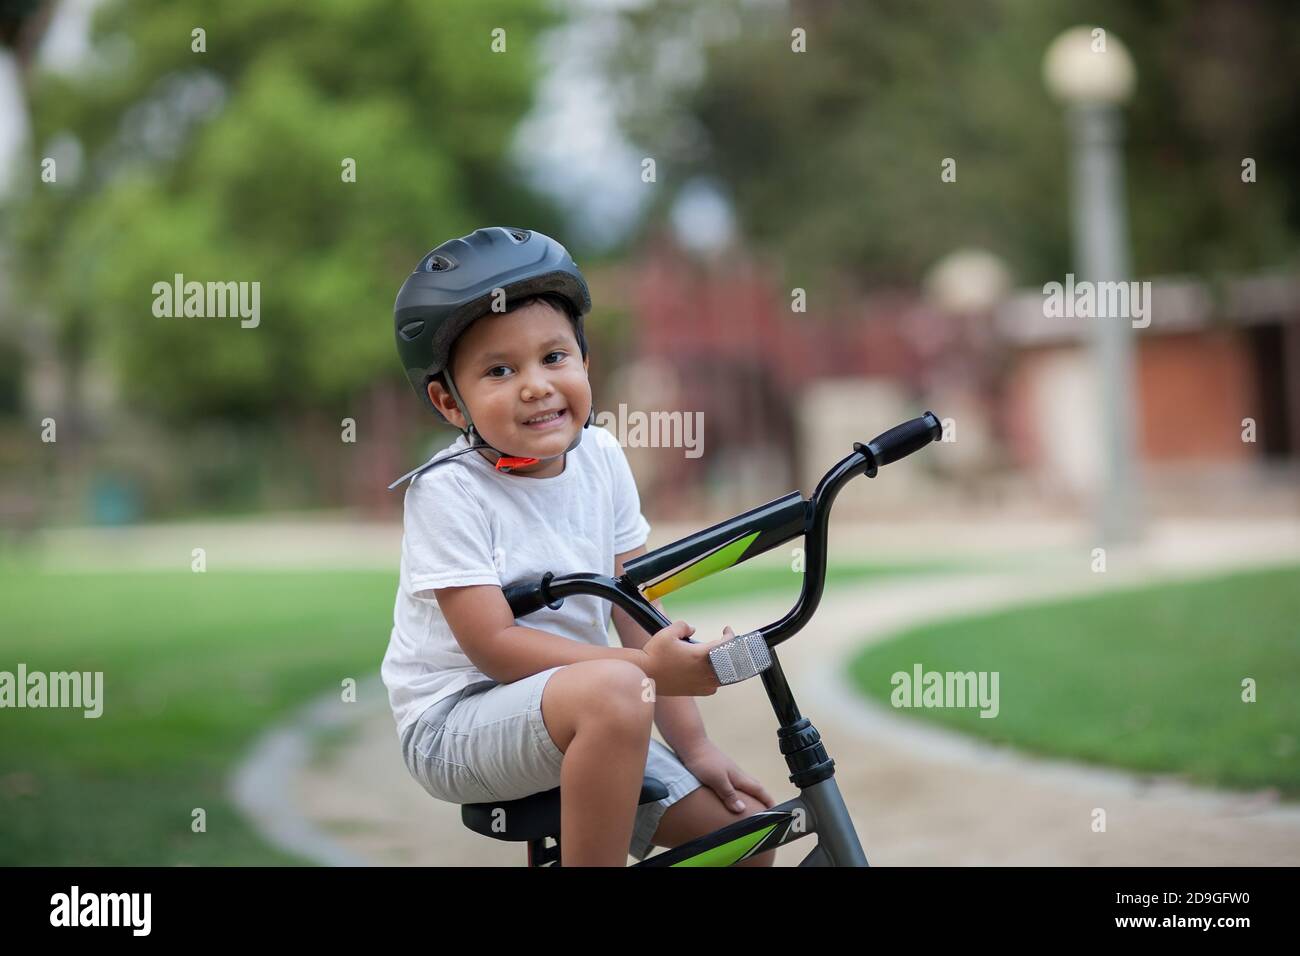 Un niño sano sentado en su bicicleta en un camino del parque que lleva un casco de seguridad, camiseta y pantalones cortos. Foto de stock